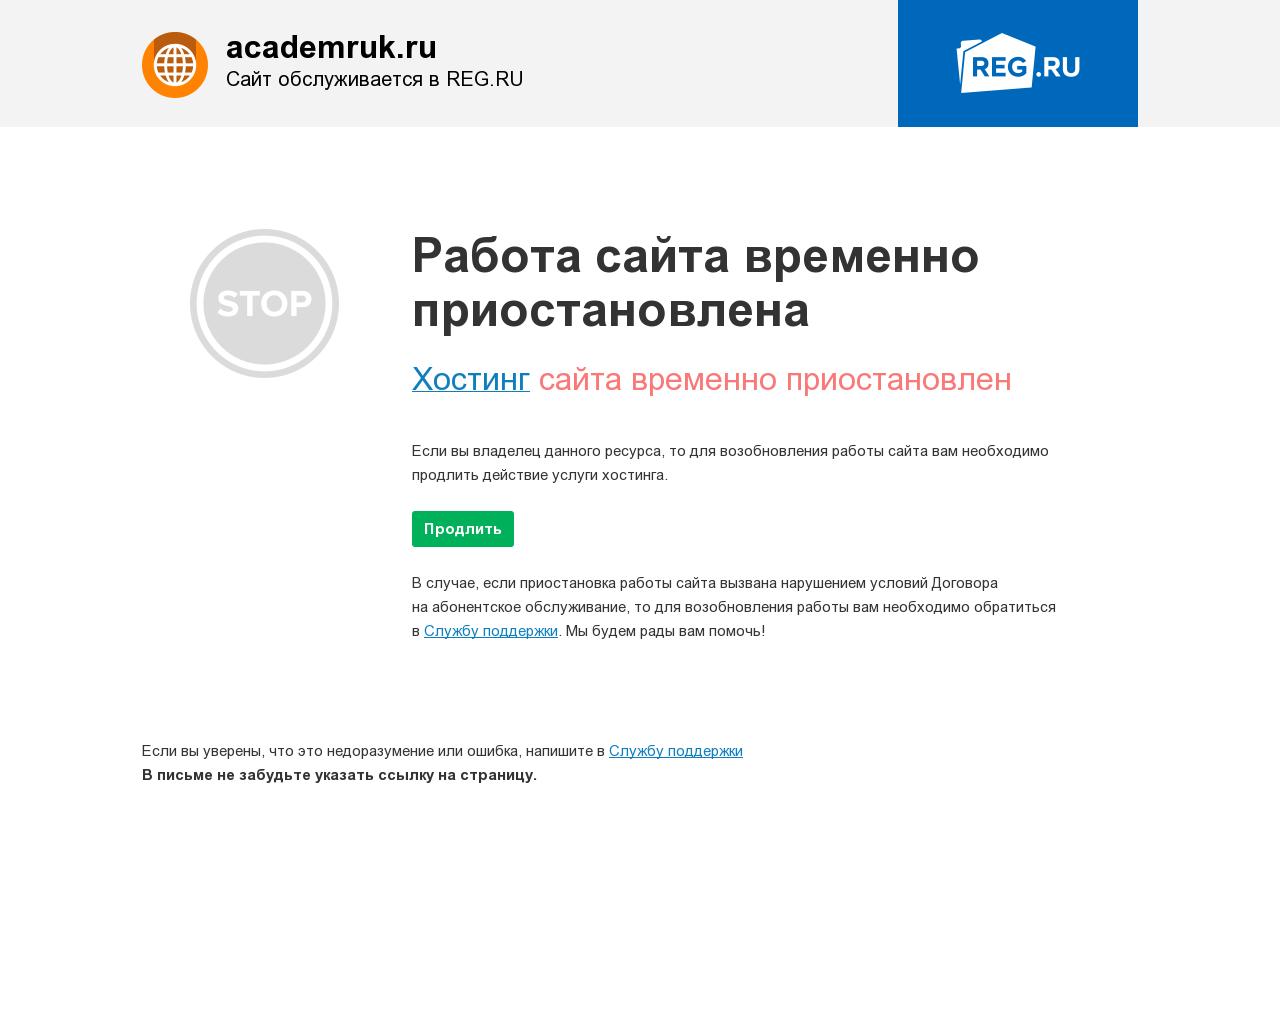 Изображение сайта academruk.ru в разрешении 1280x1024